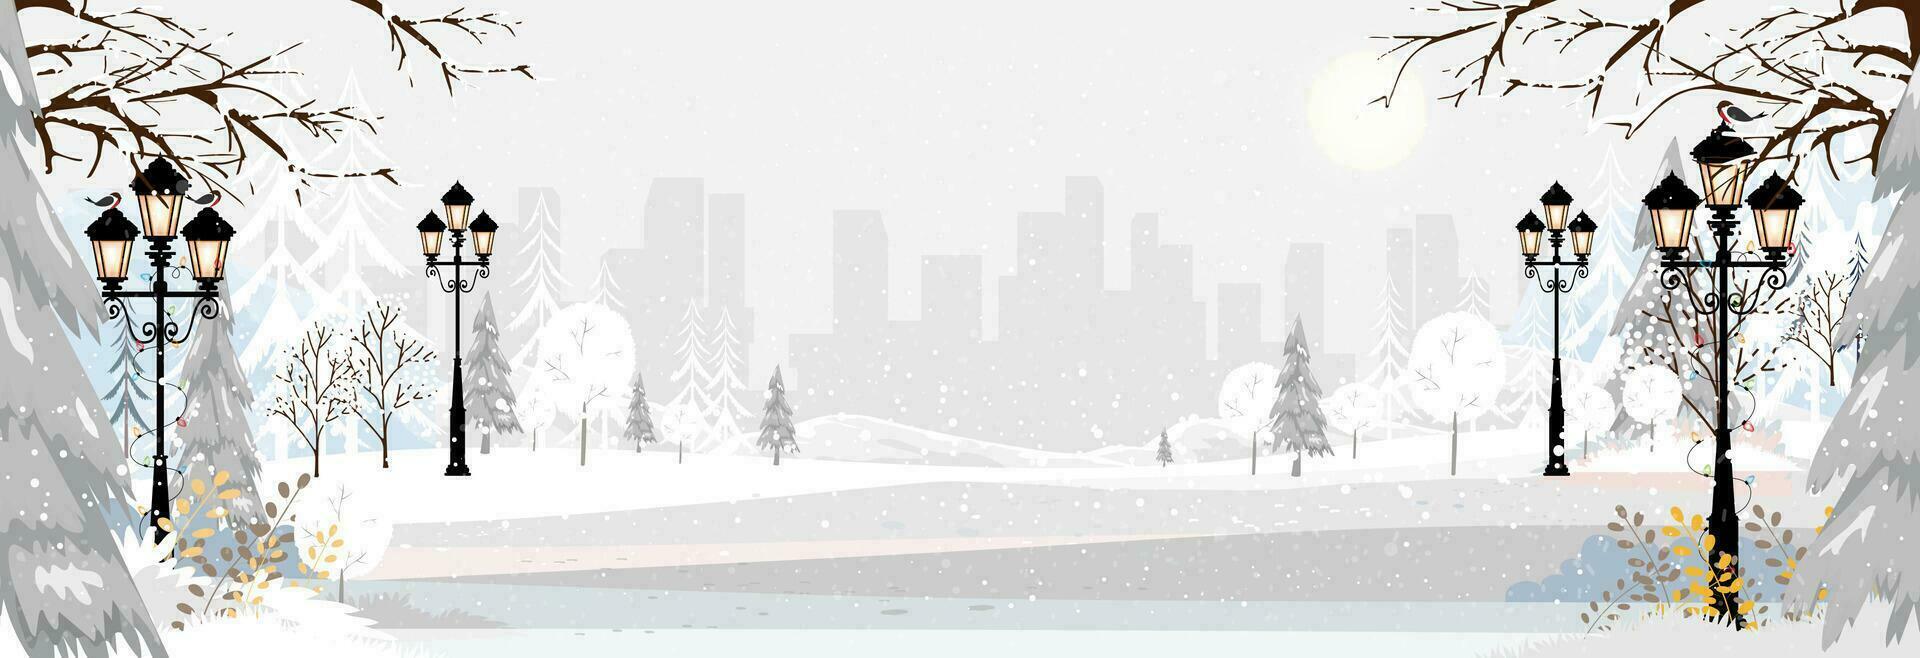 jul bakgrund, vinter landskap med snöig i stad park.vector tecknad serie horisont landskap vinter- sagoland med häftig snöstorm i de stad på natt, panoramautsikt baner urban utomhus- för ny år bakgrund vektor